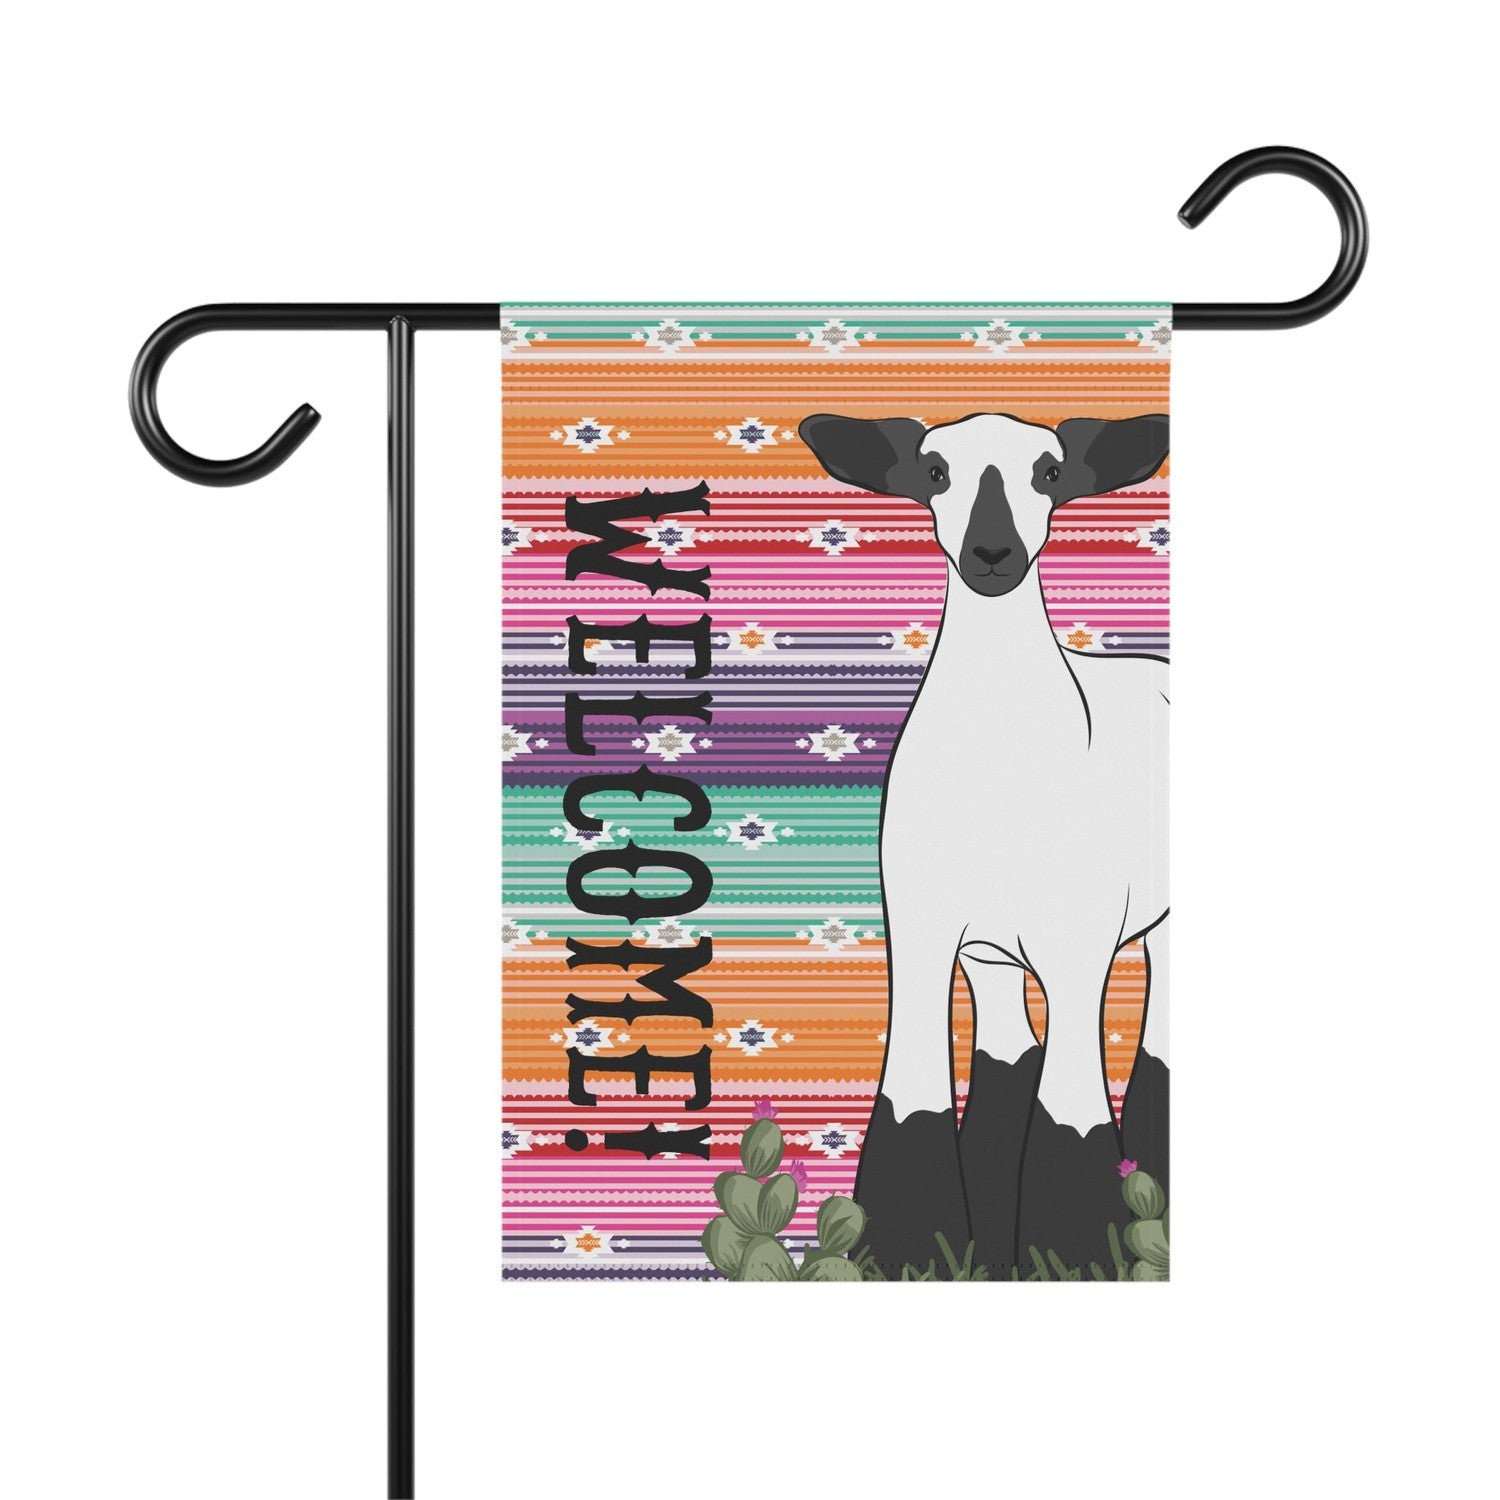 Custom Made Garden Flag - Serape Stock Show Livestock - Livestock &amp; Co. Boutique